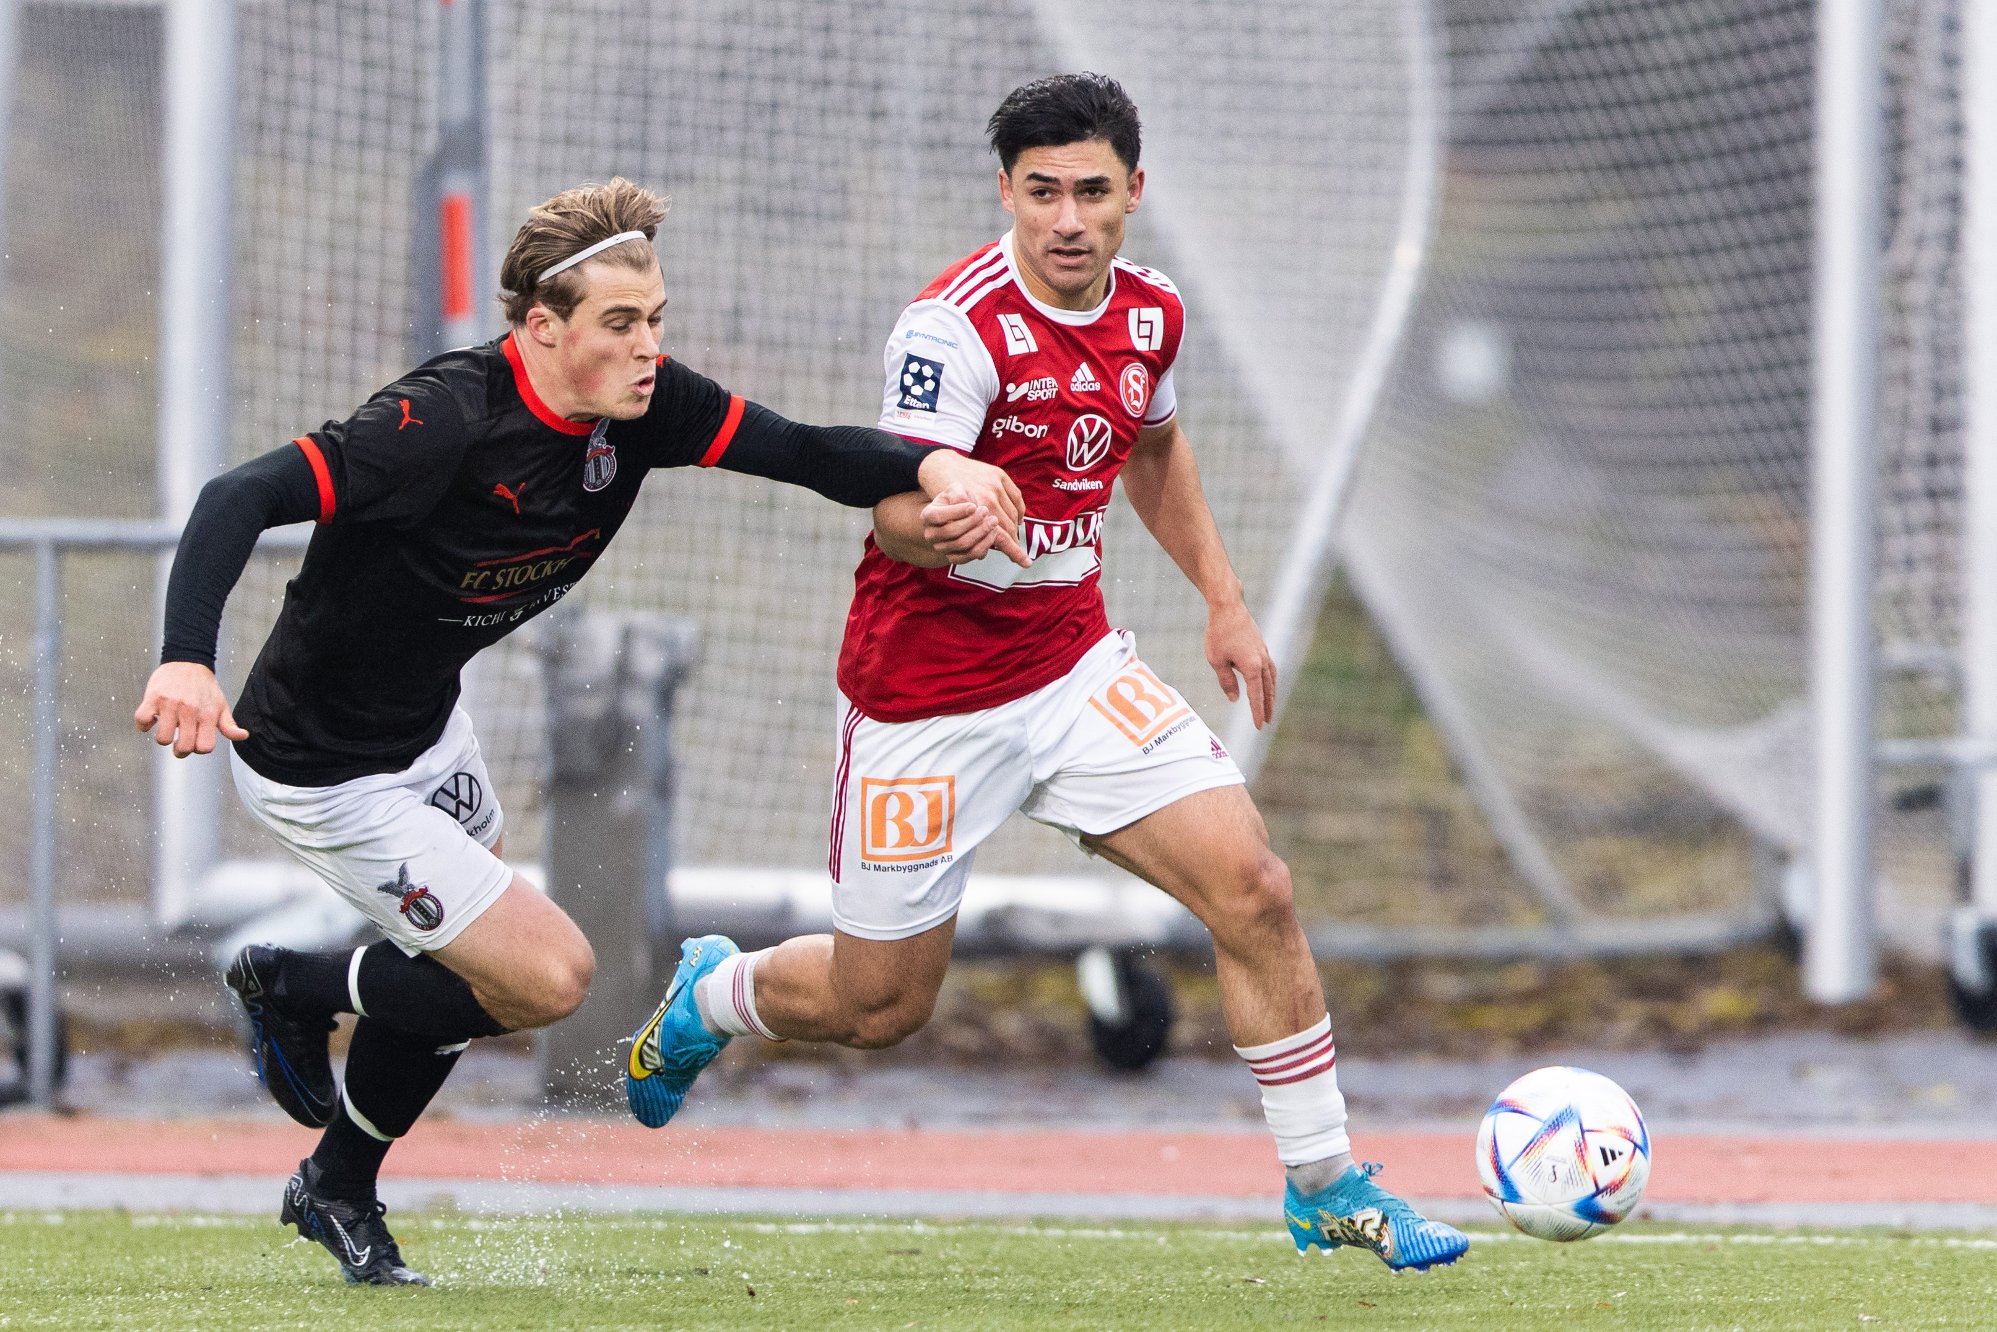 norsk fotball i kulissene: norsk klubb vil gjenta storsuksess